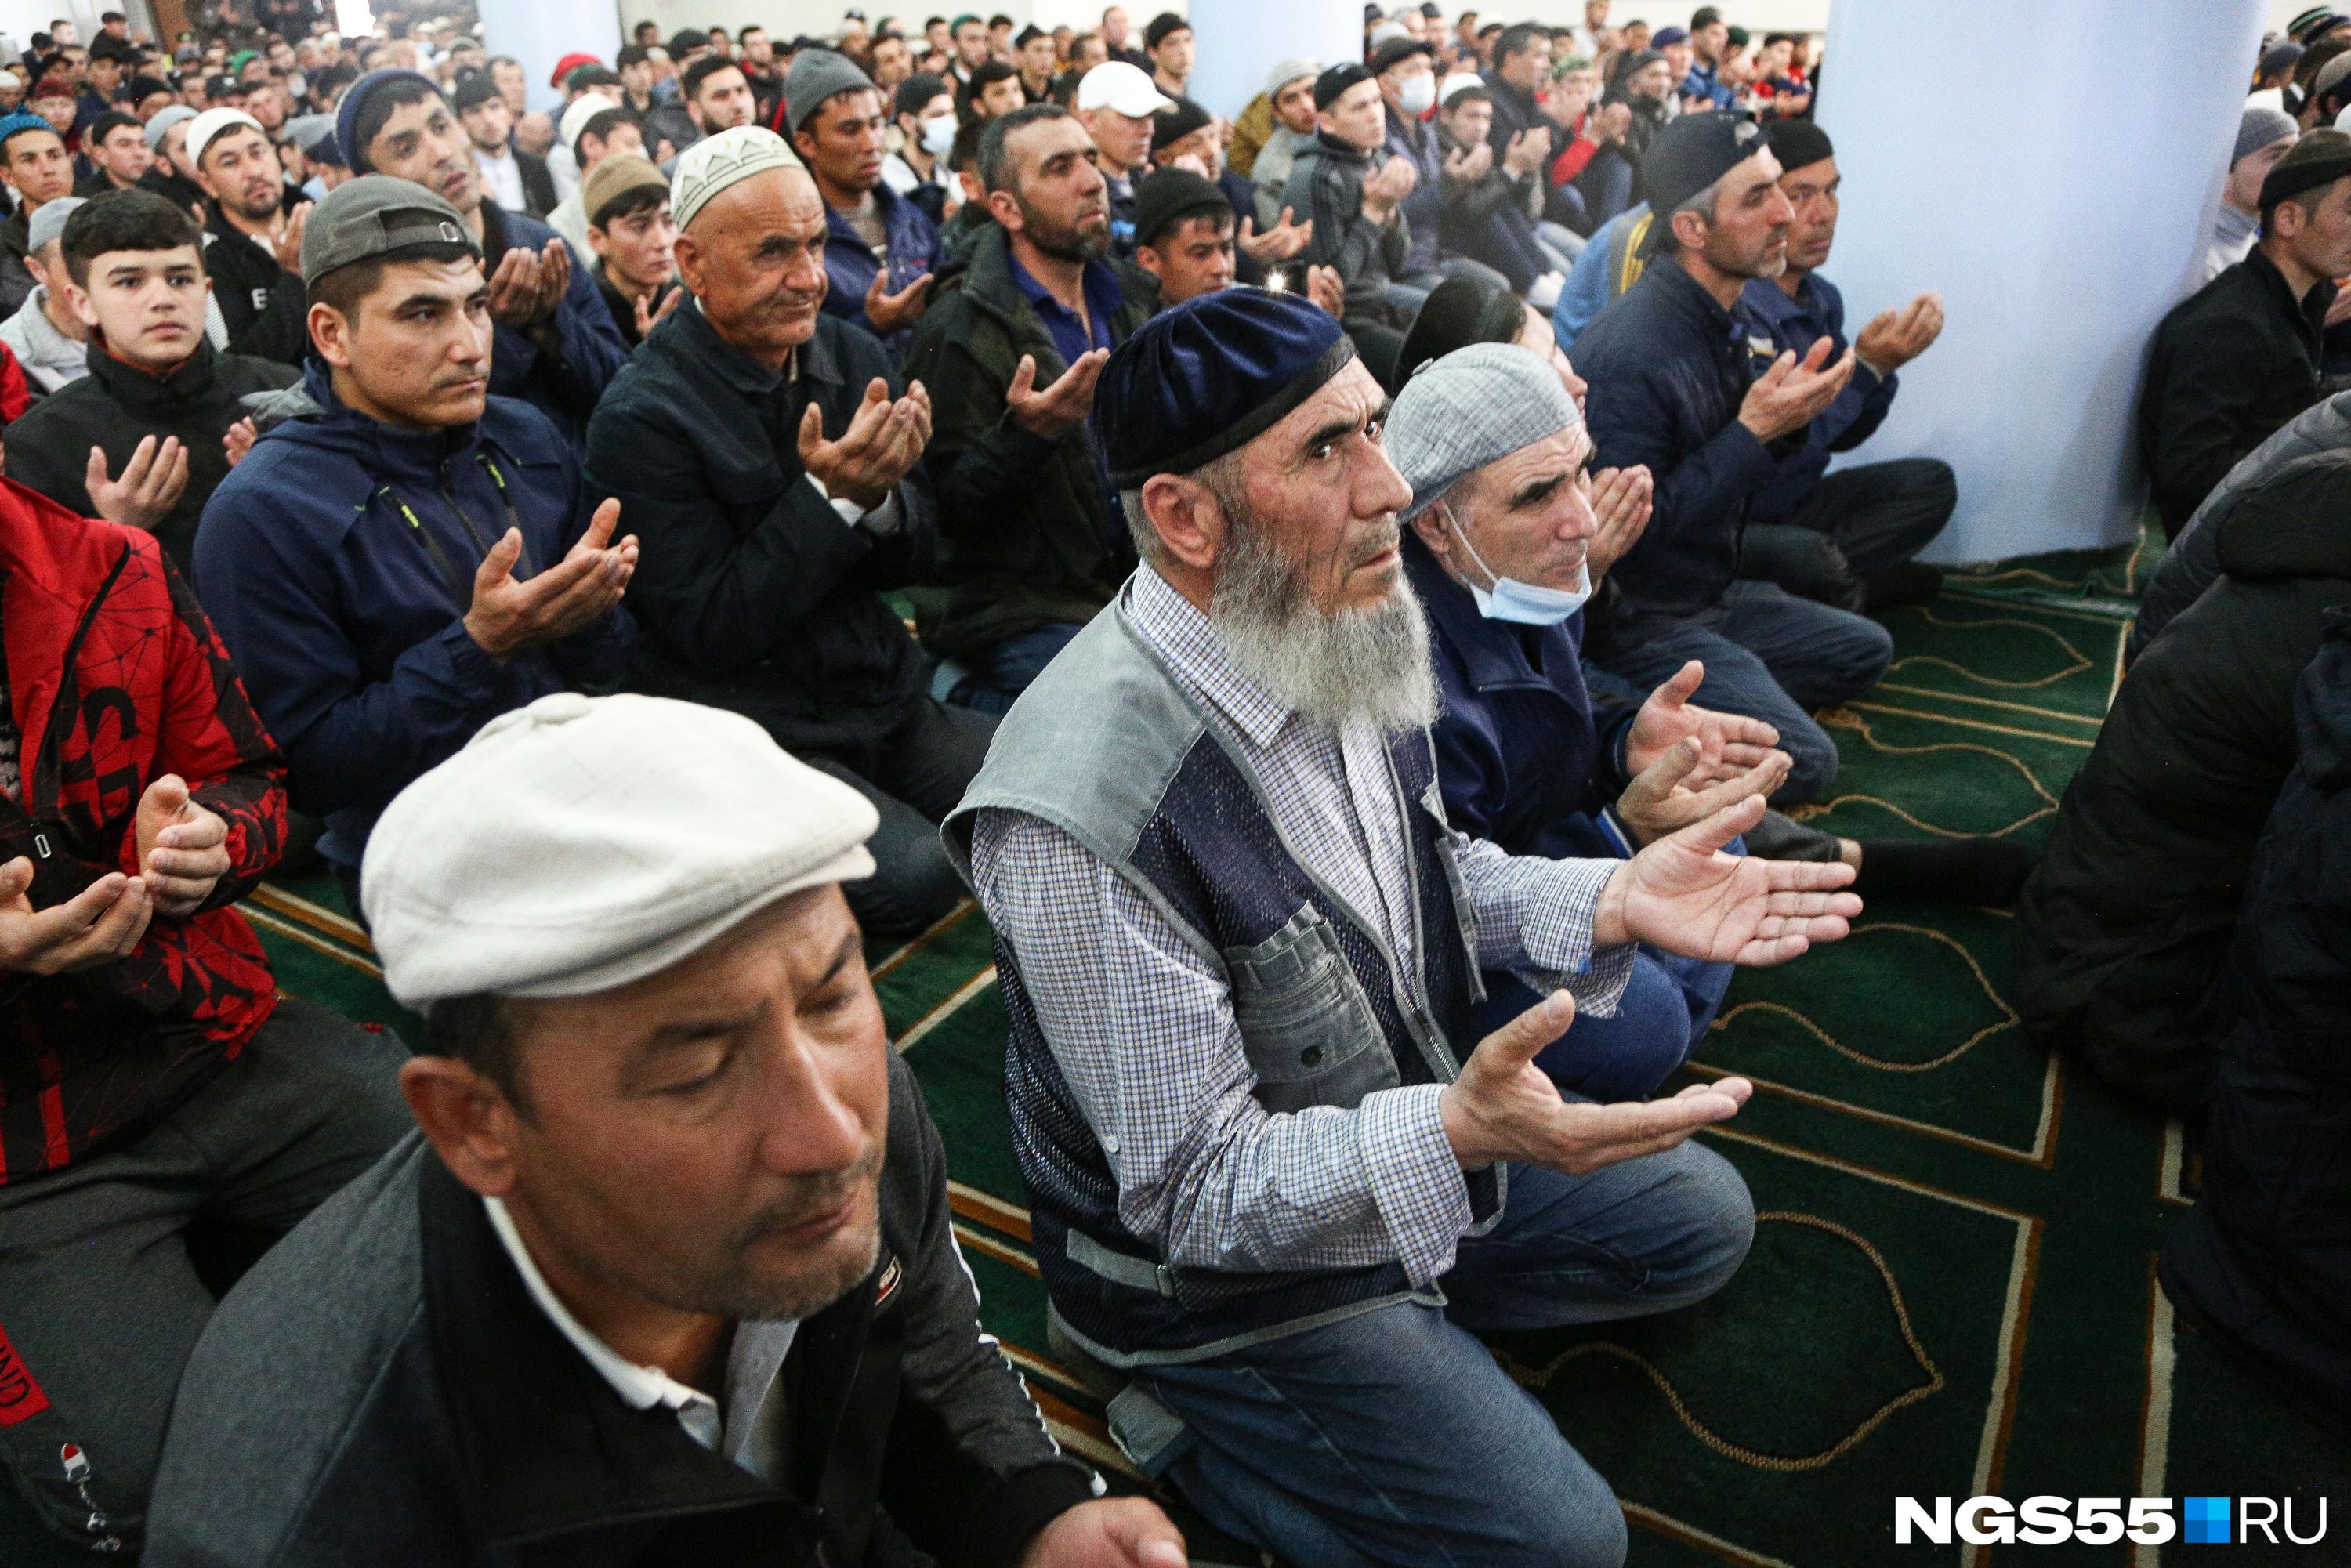 На служении присутствовали мусульмане всех возрастов. Мечеть посетили как юноши, так и пожилые люди